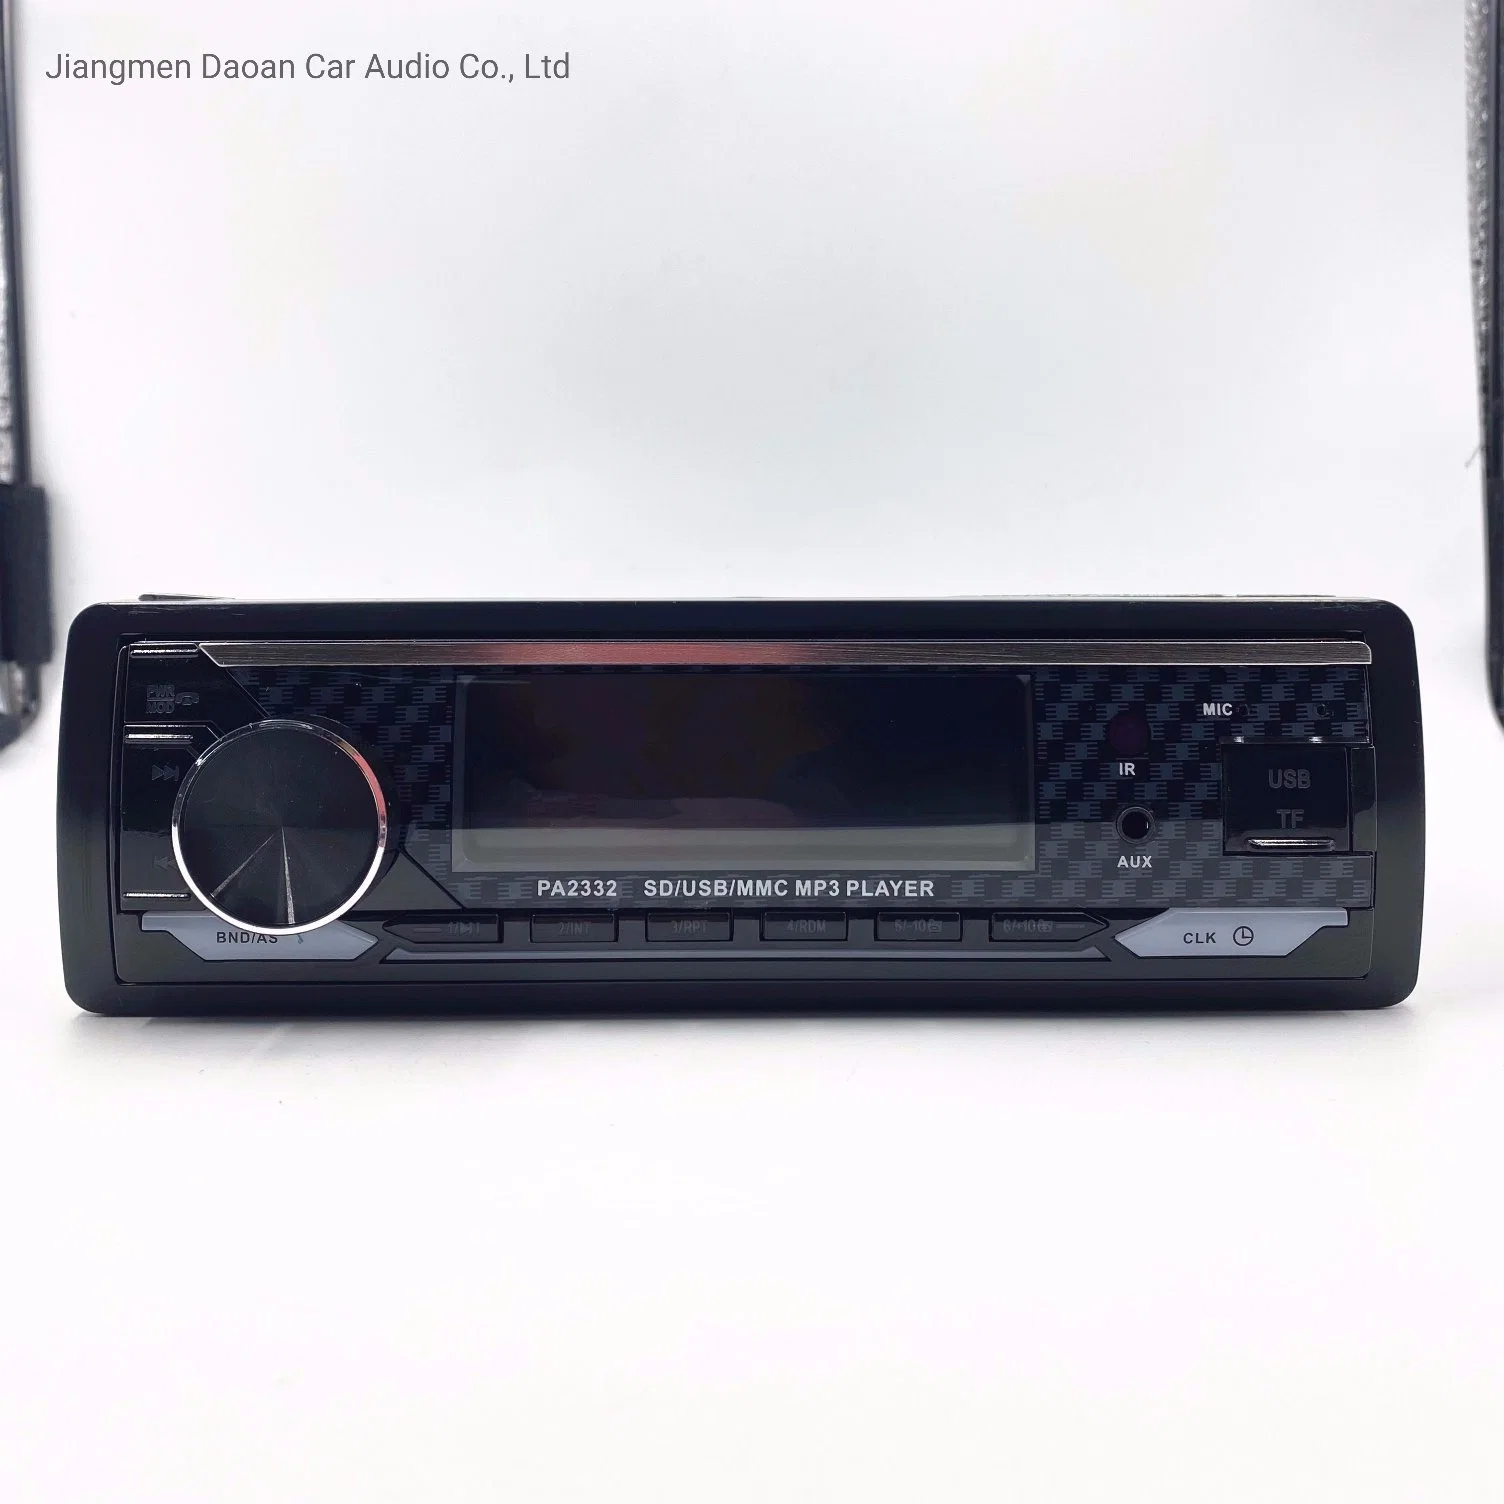 Pantalla LCD de 1 DIN Car Audio de MP3 con Bluetooth